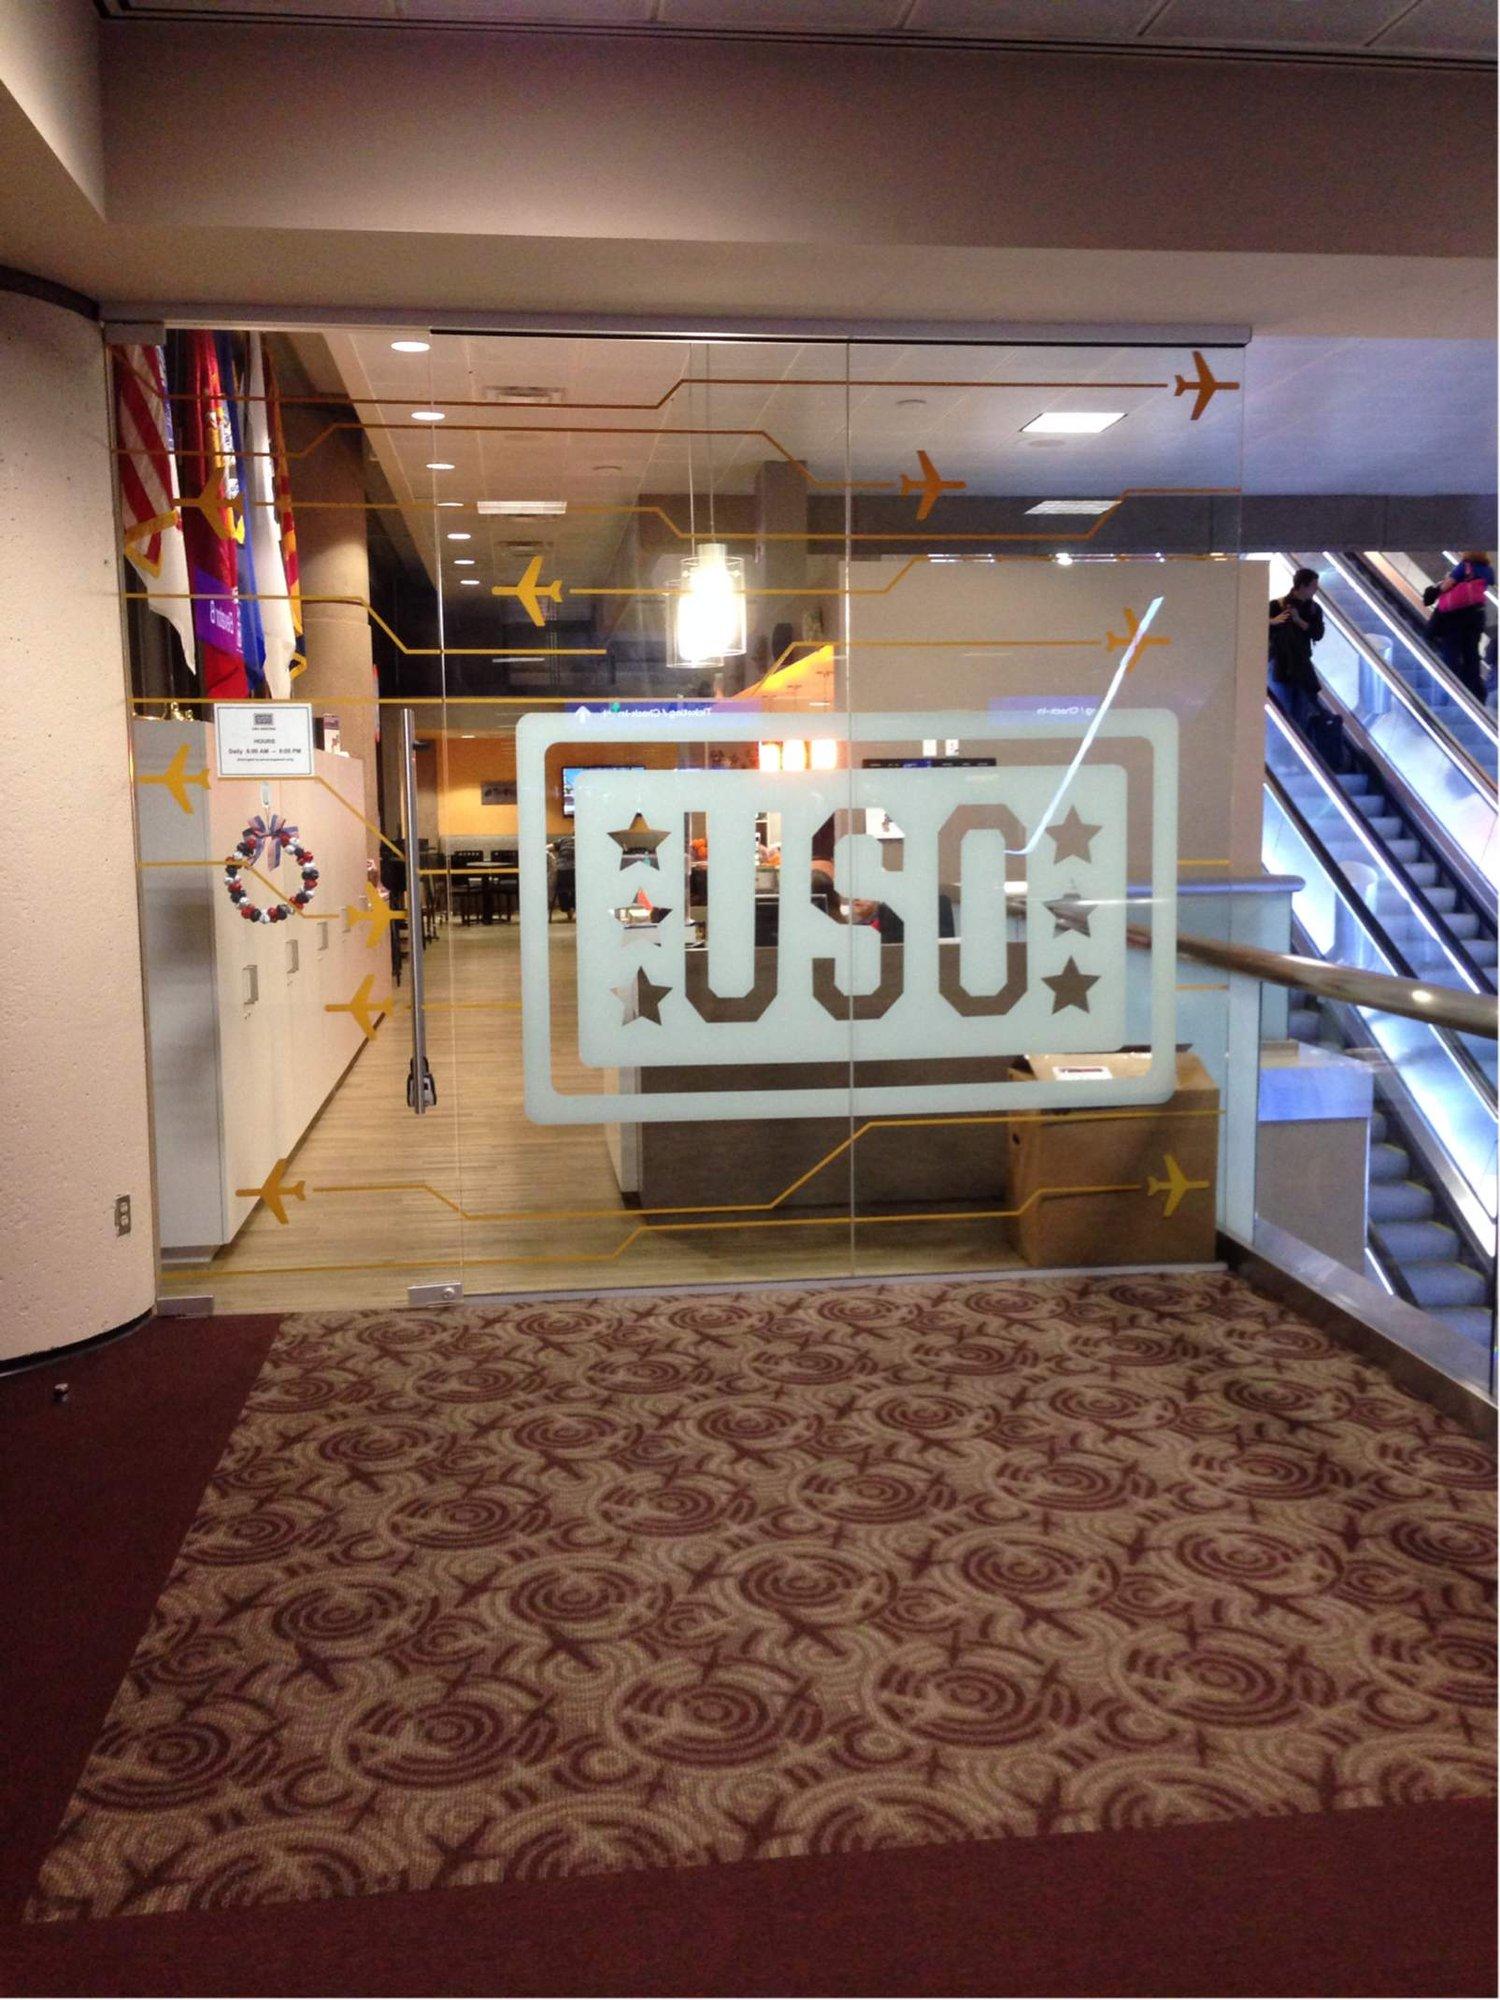 USO Lounge image 8 of 14